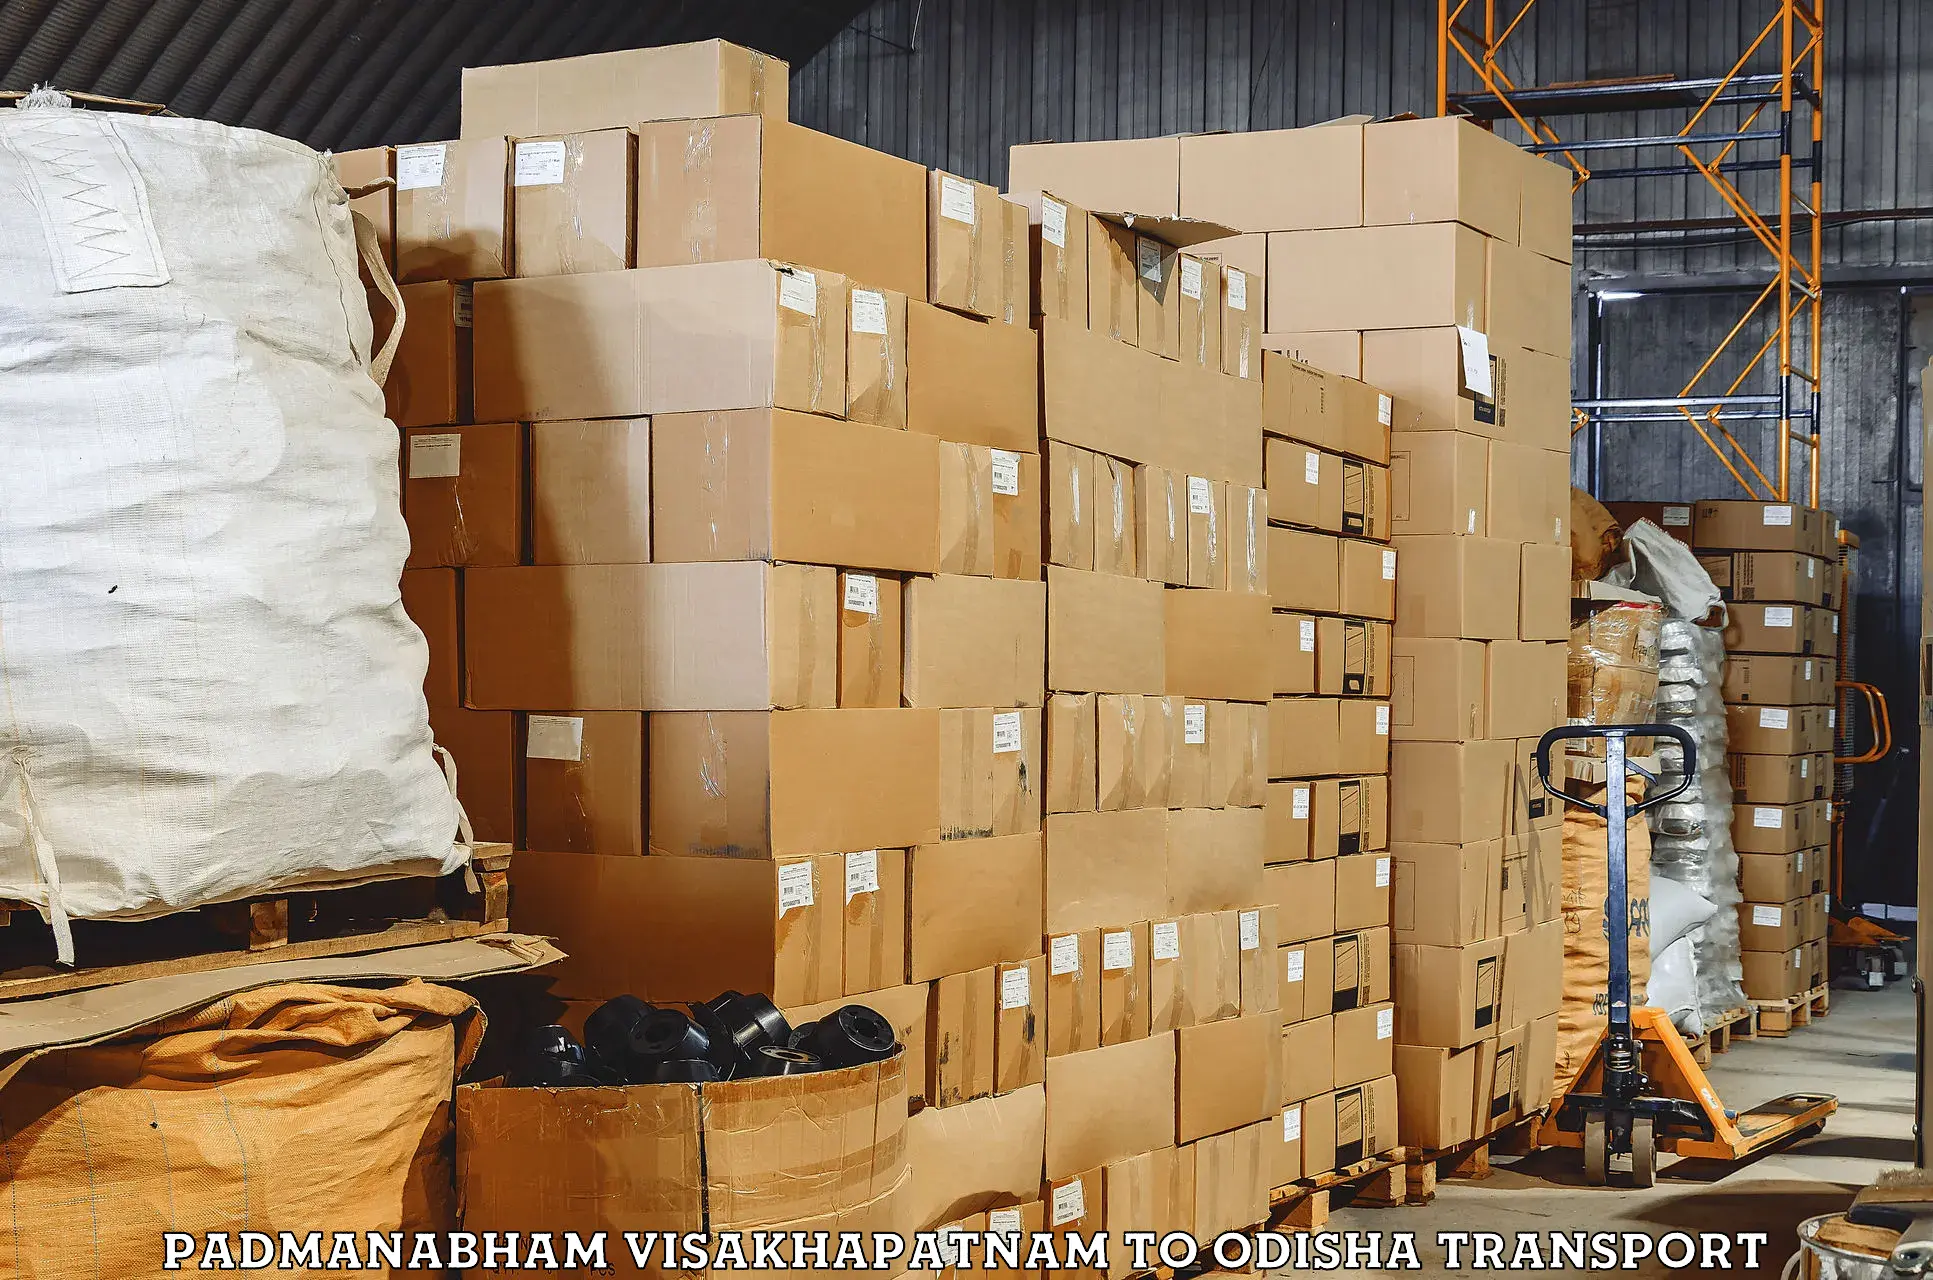 Daily parcel service transport Padmanabham Visakhapatnam to Mathili